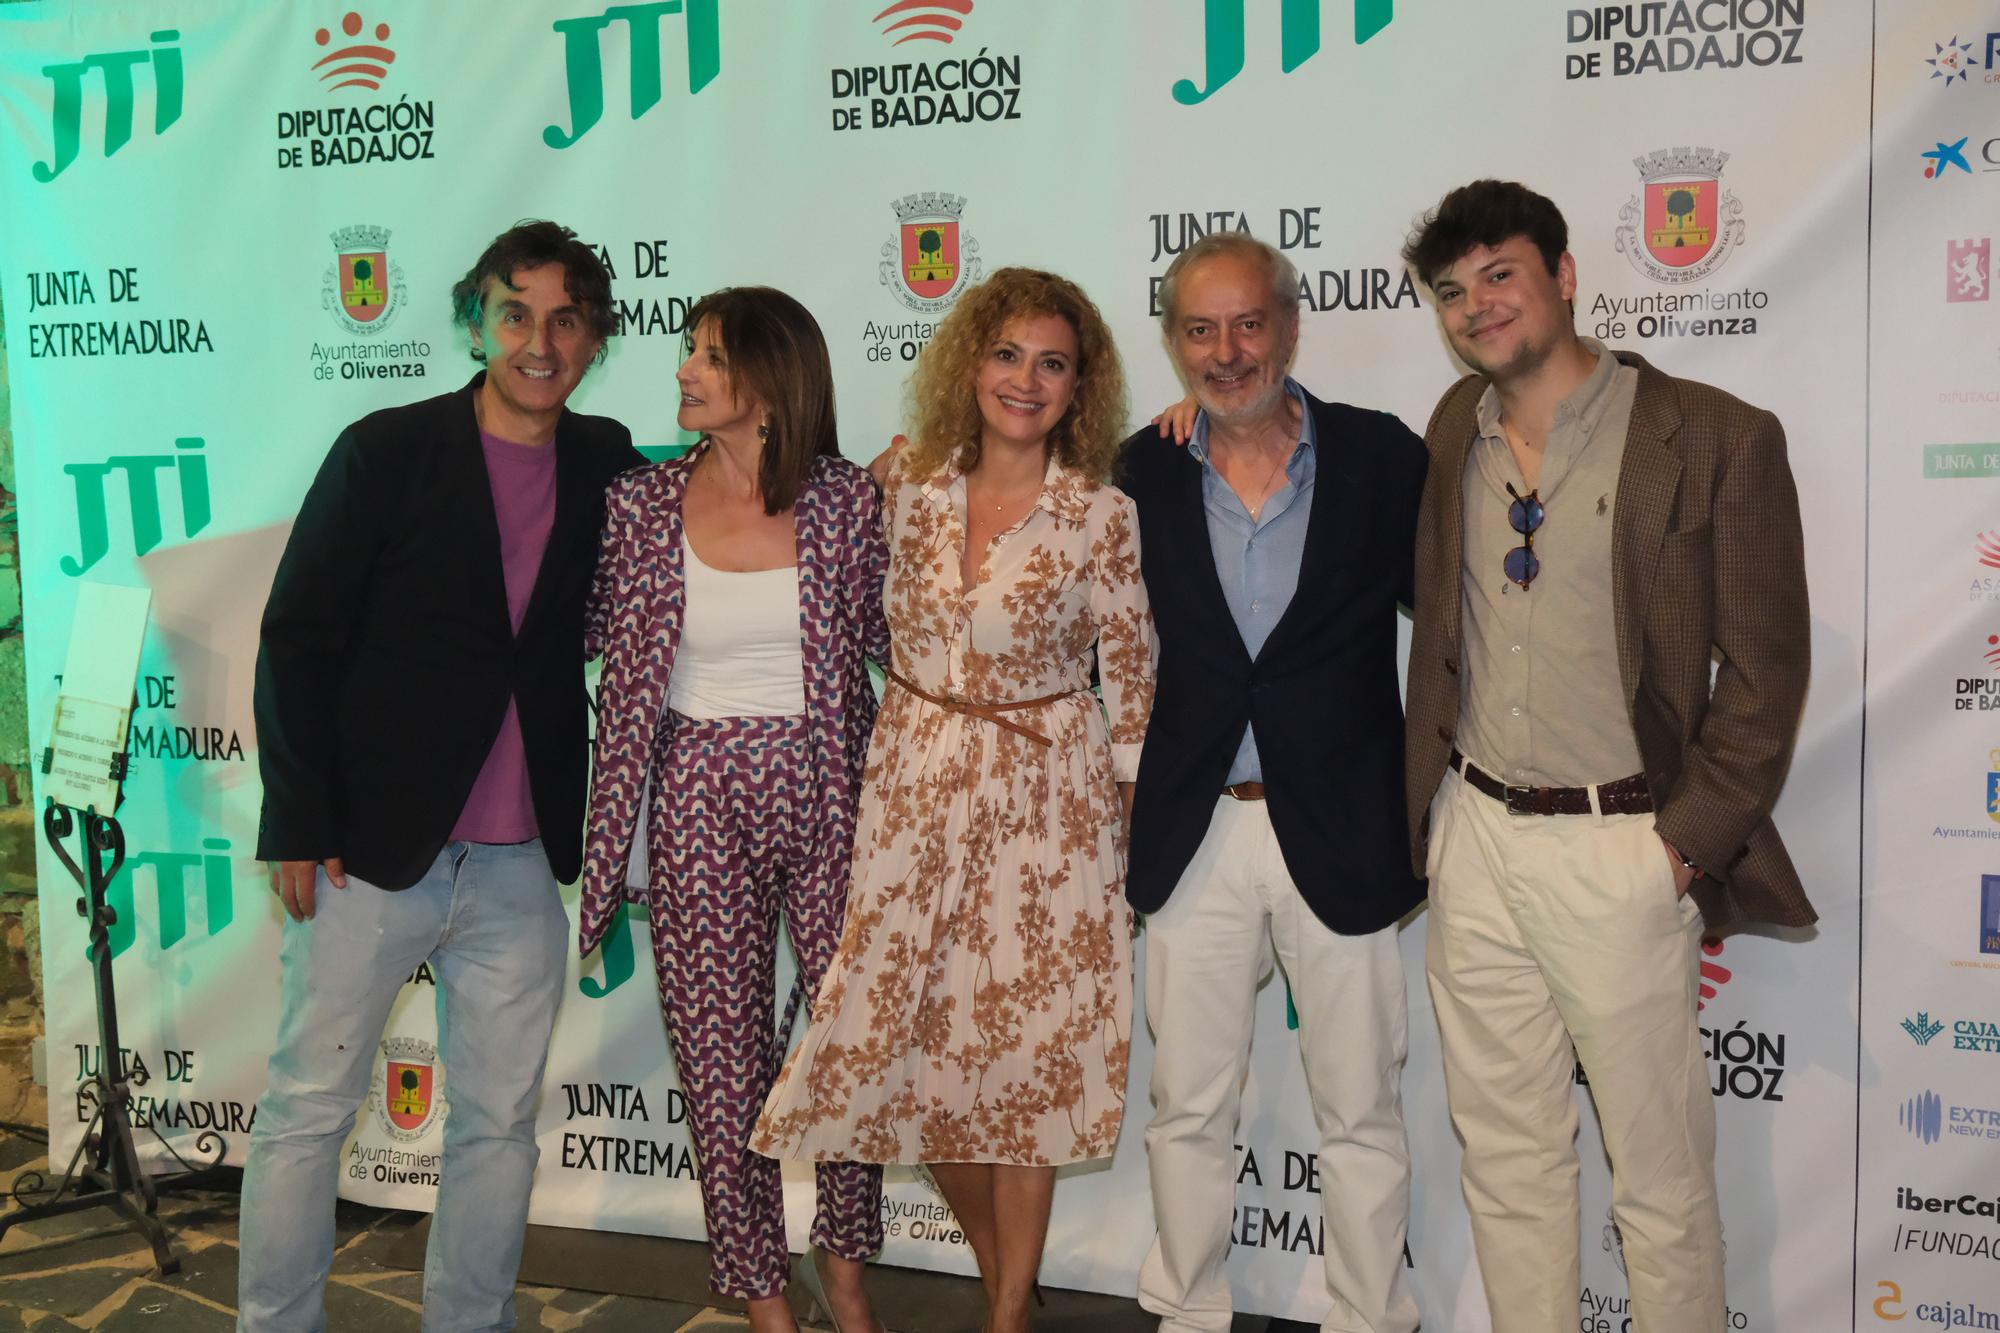 GALERÍA | Las imágenes de los VII Premios Turismo Extremadura